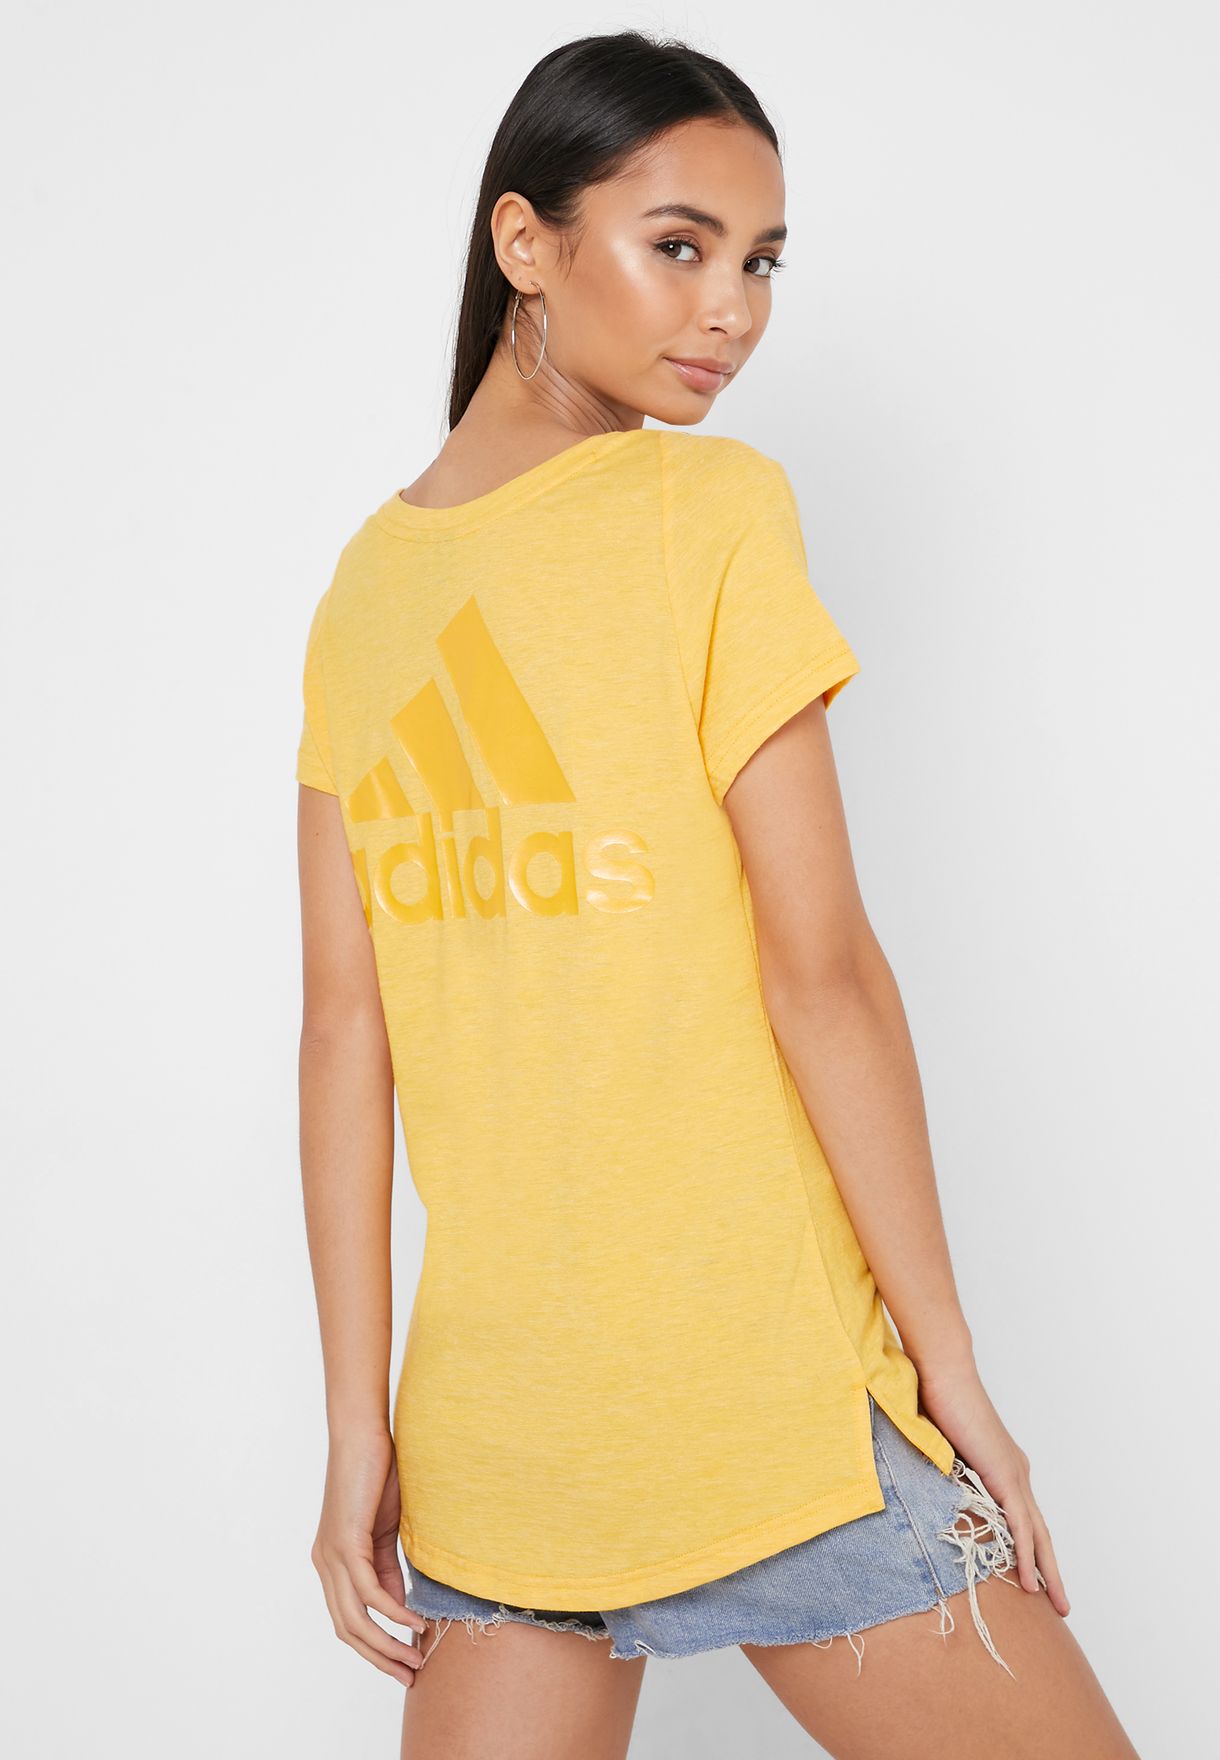 adidas yellow shirt womens